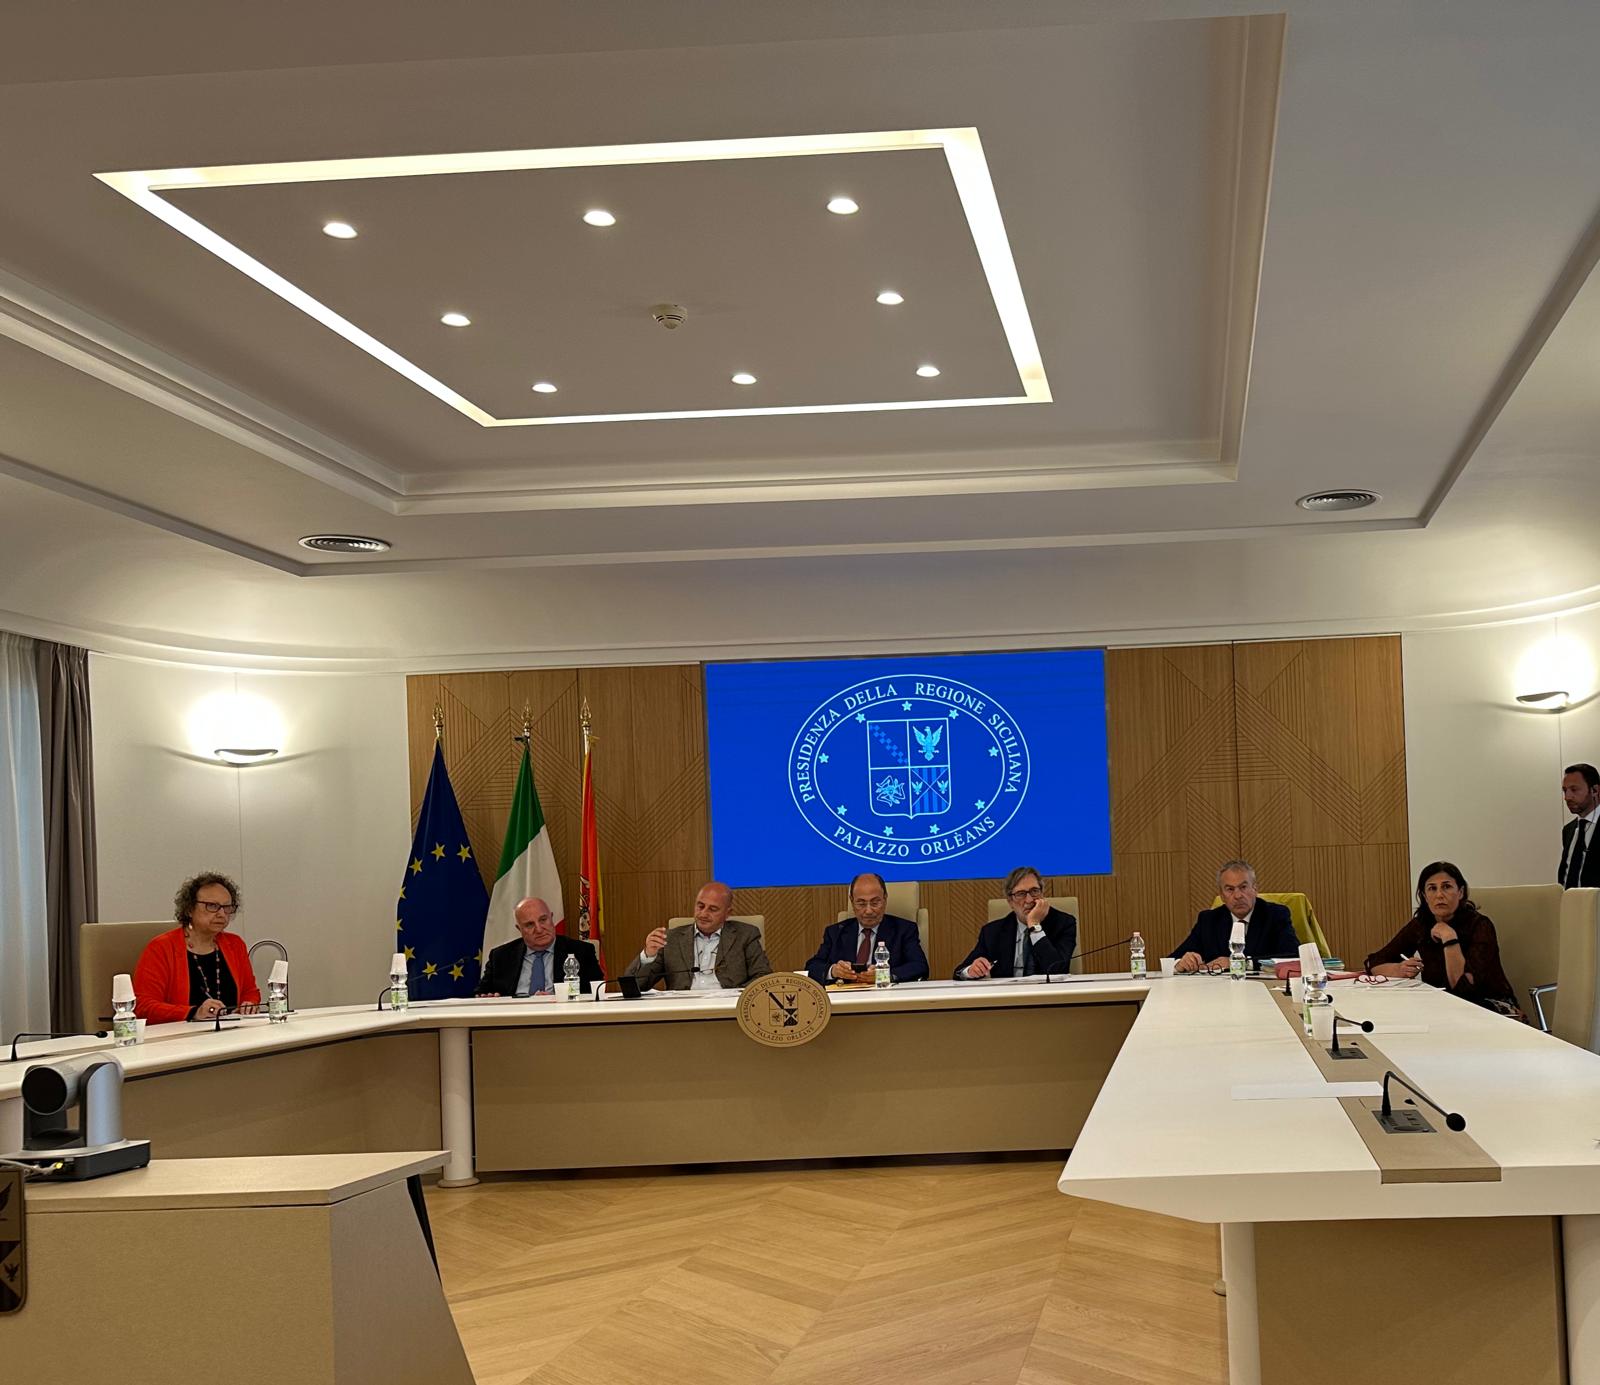 Formazione professionale in Sicilia: il Presidente Schifani rianima gli Enti annuncia una riforma del settore